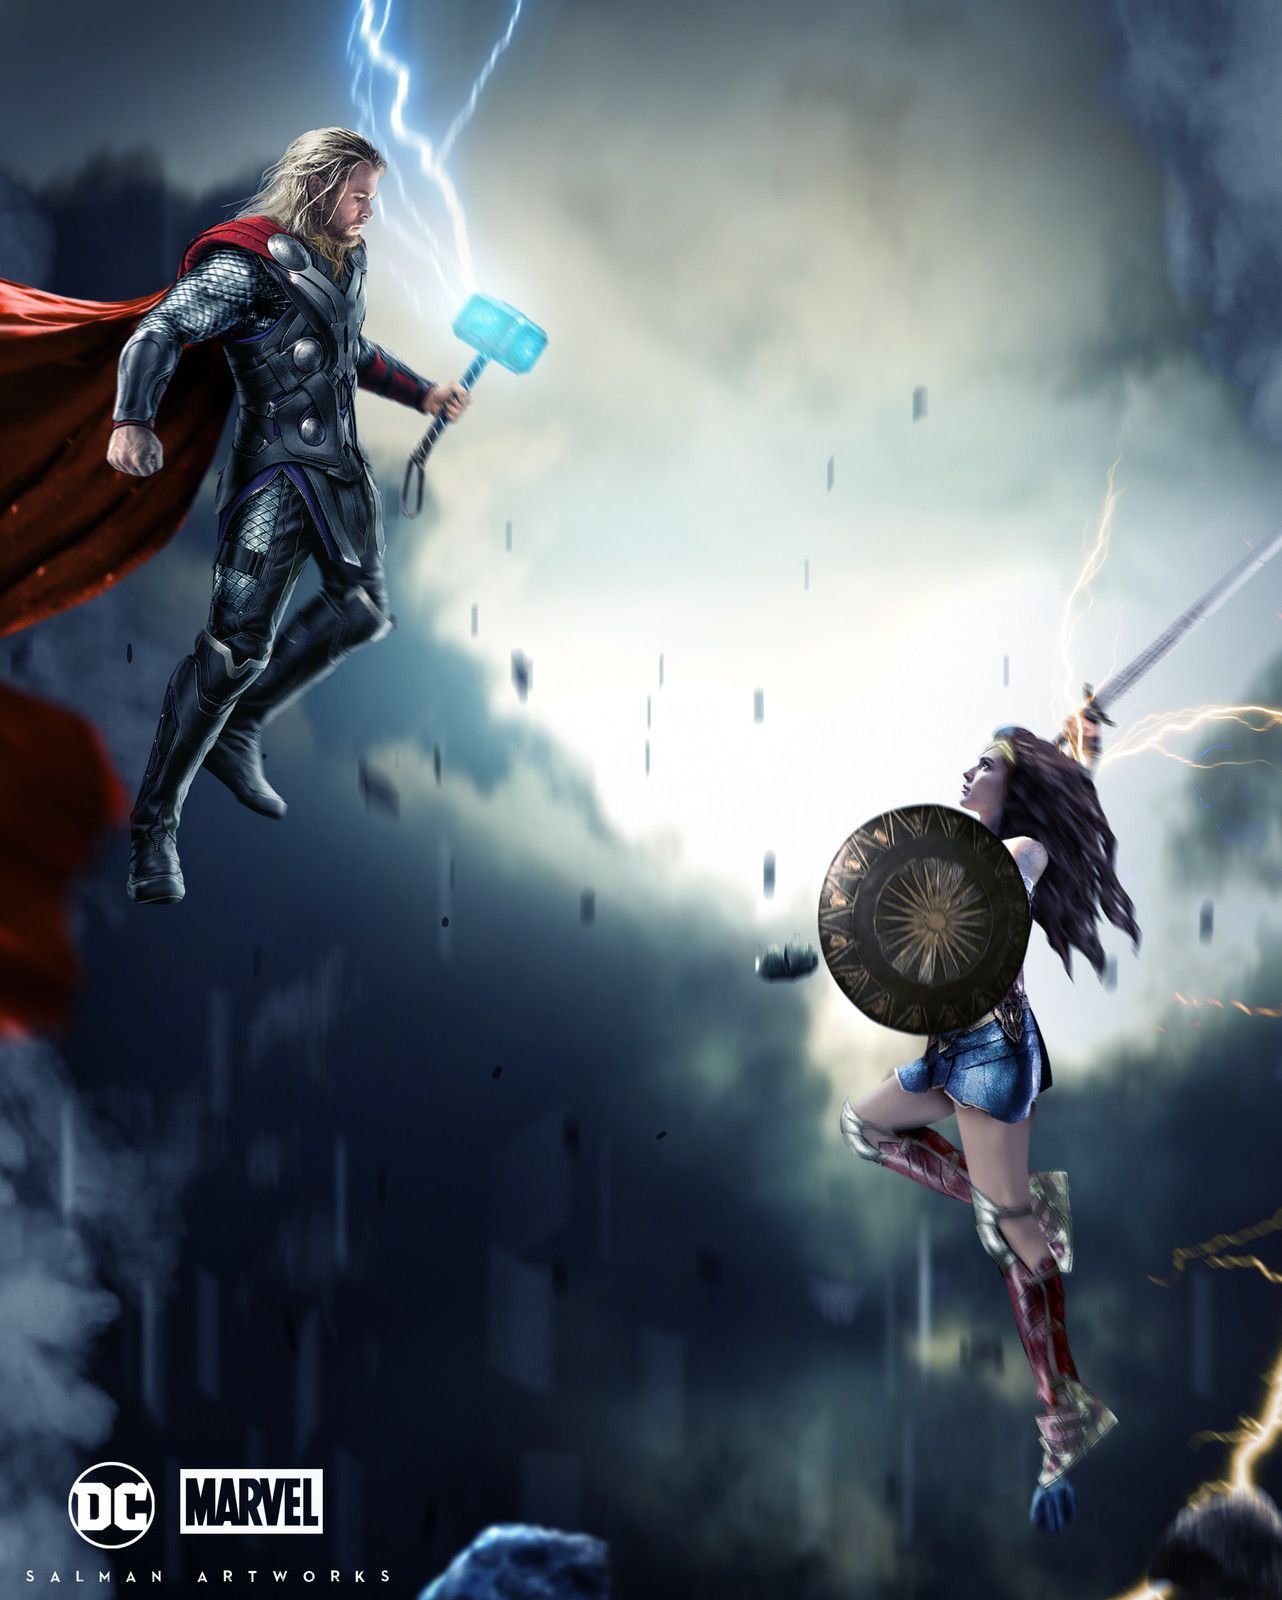 Thor Vs Wonder Woman Artwo. Dc Comics Vs Marvel, Marvel And Dc Crossover, Wonder Woman Fan Art